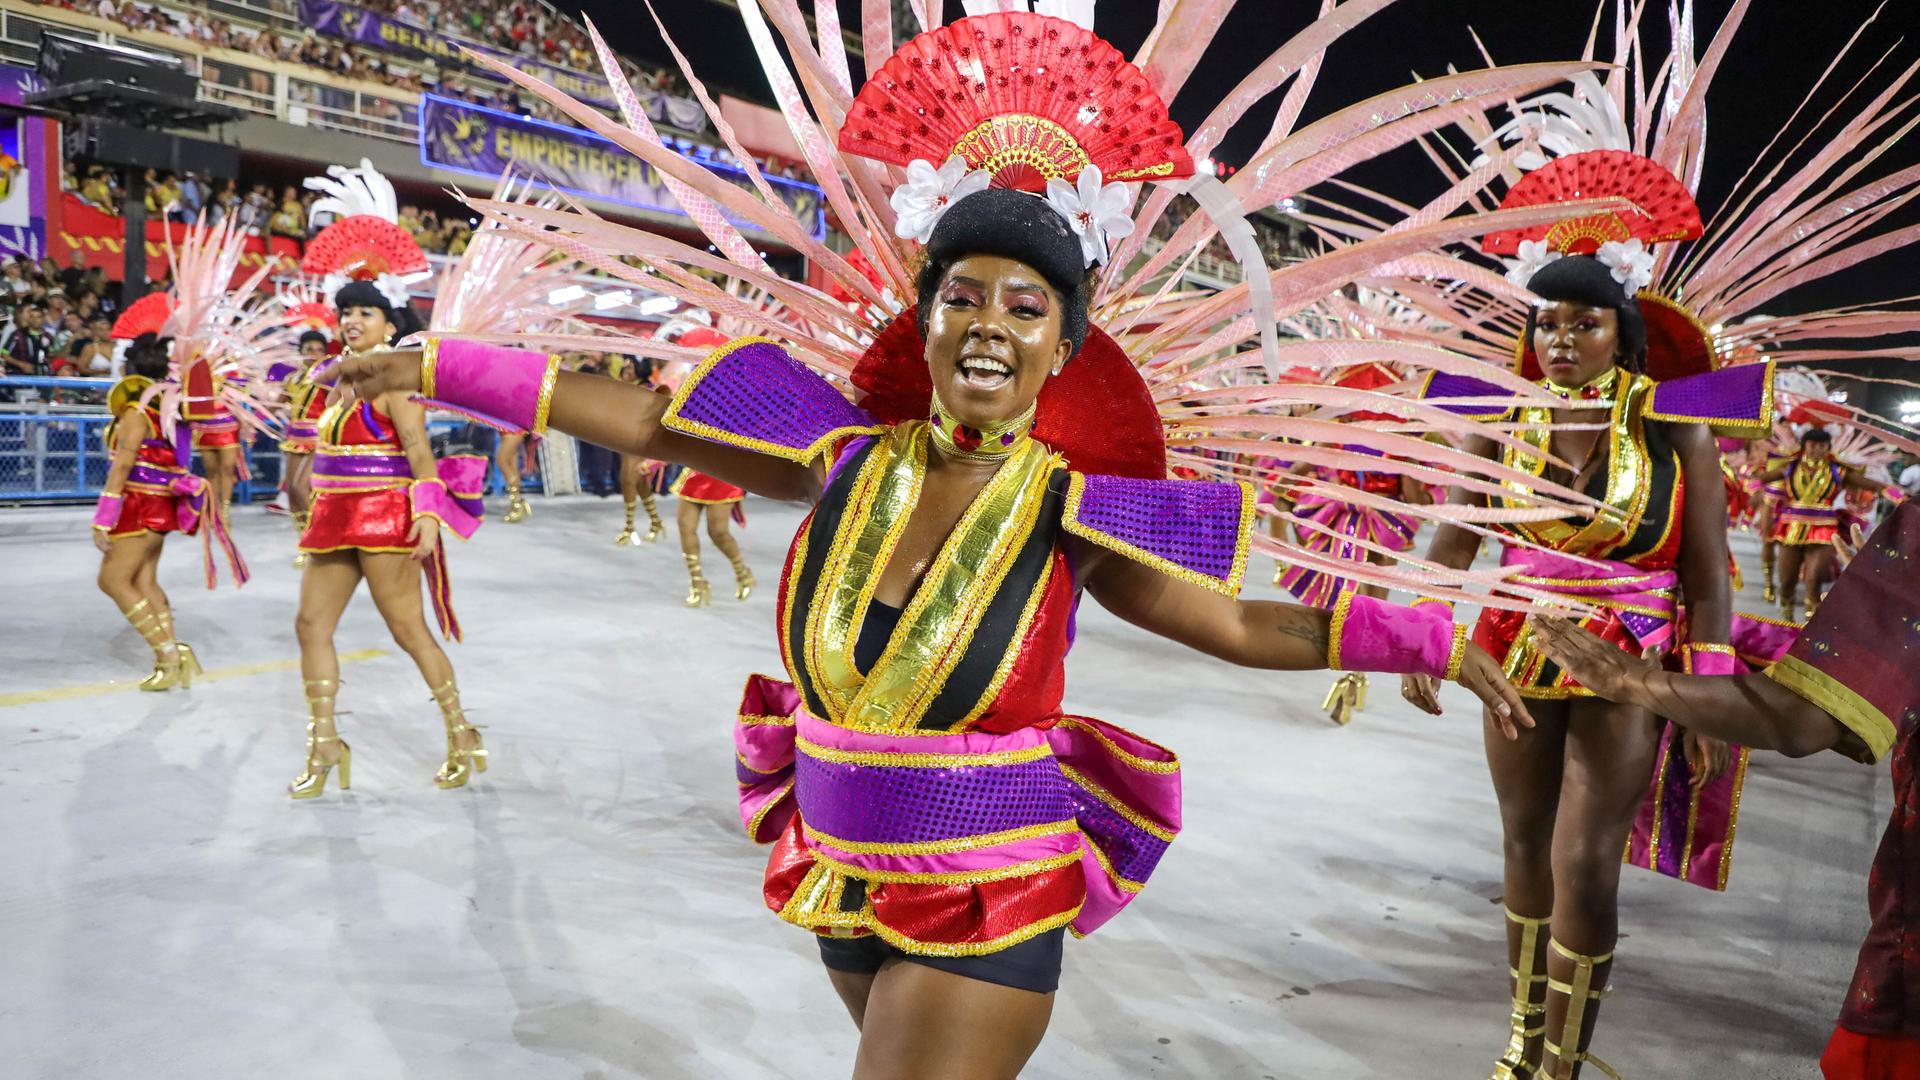 Eine bunt gekleidete und mit Federn geschmückte Samba-Tänzerin auf dem Karneval in Rio.